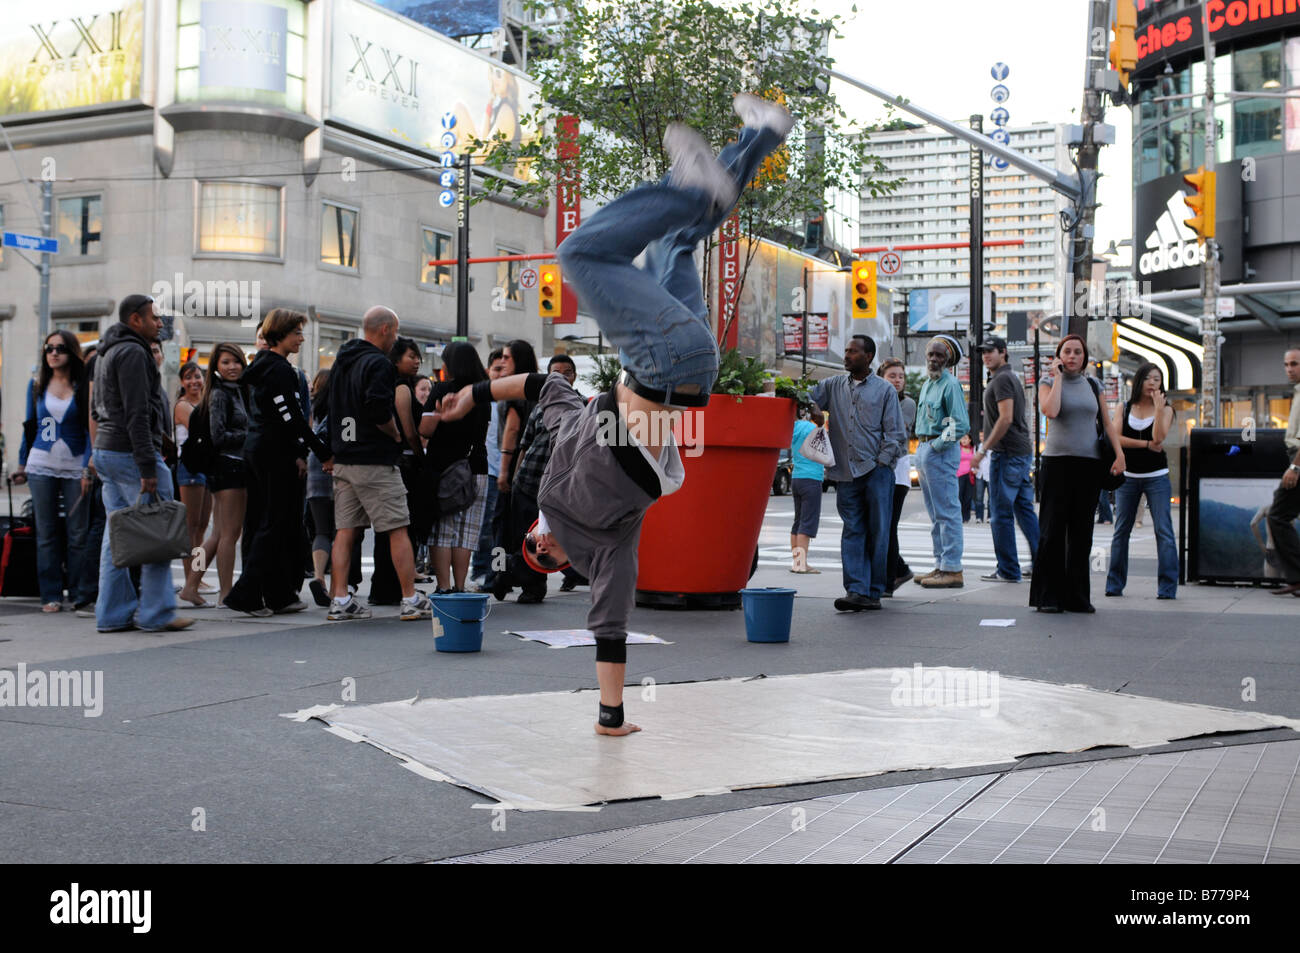 Eine talentierteste Straße Tänzerin unterhält Menschen bei Yonge-Dundas Square, in Toronto, Ontario, Kanada Stockfoto